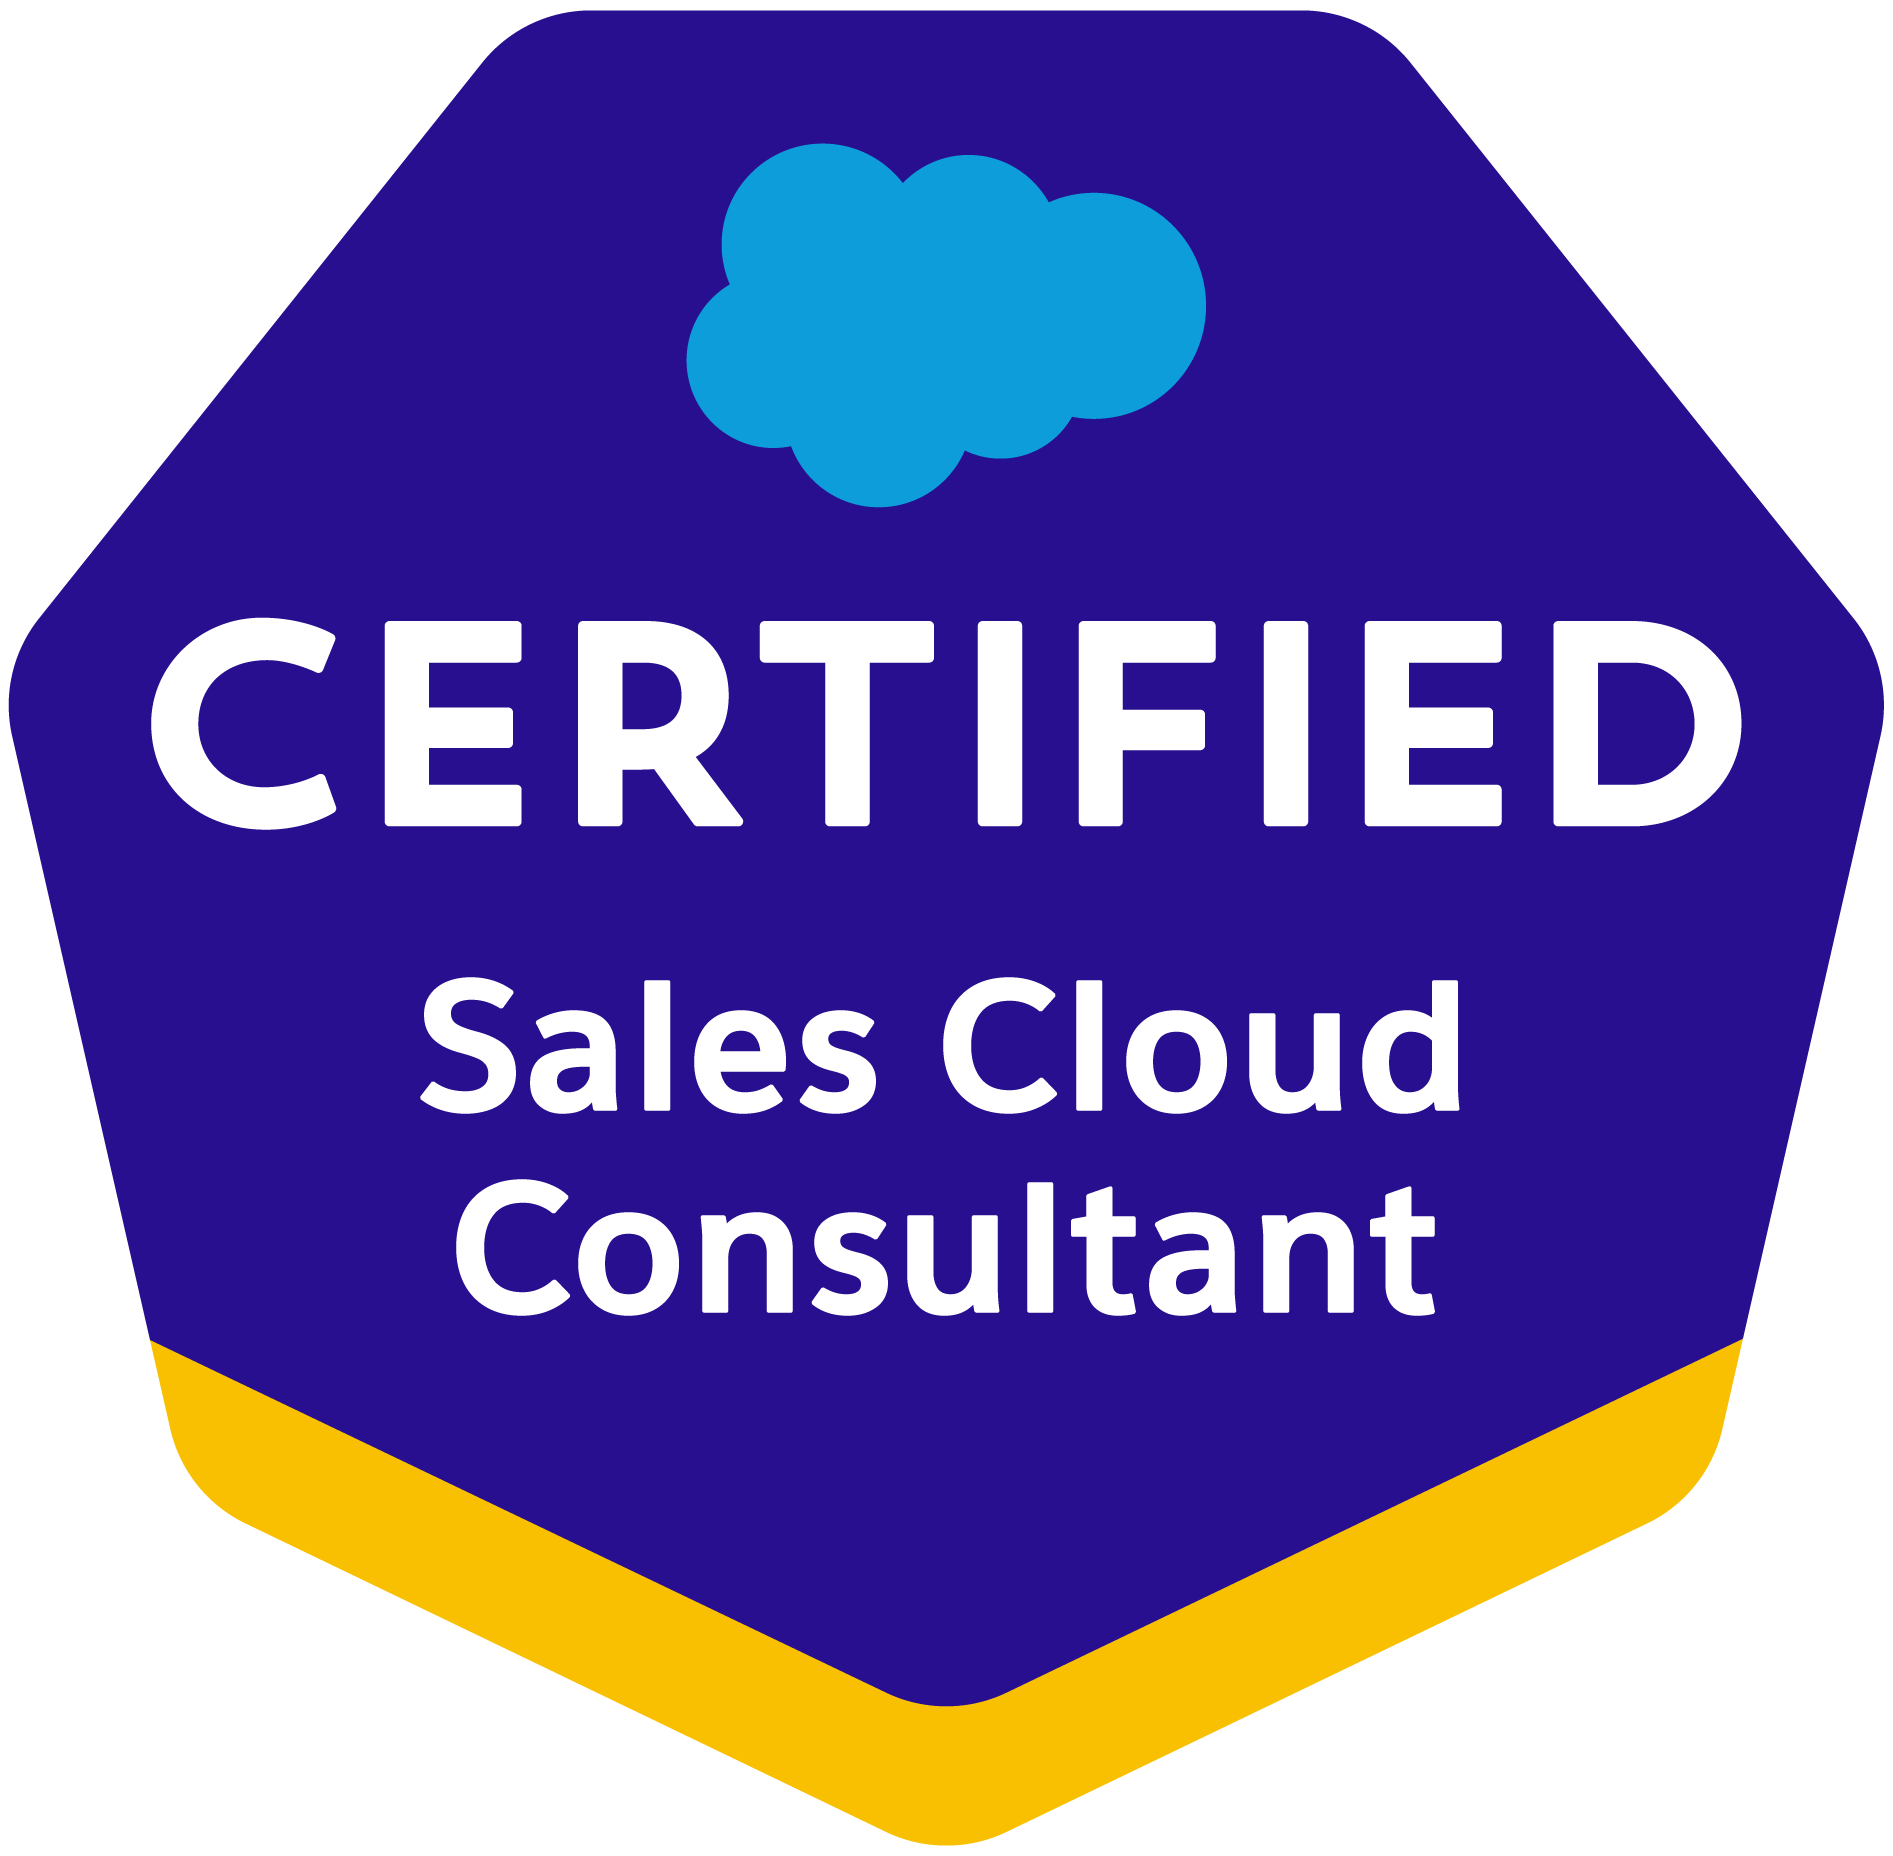 Sales-Cloud-Consultant-1